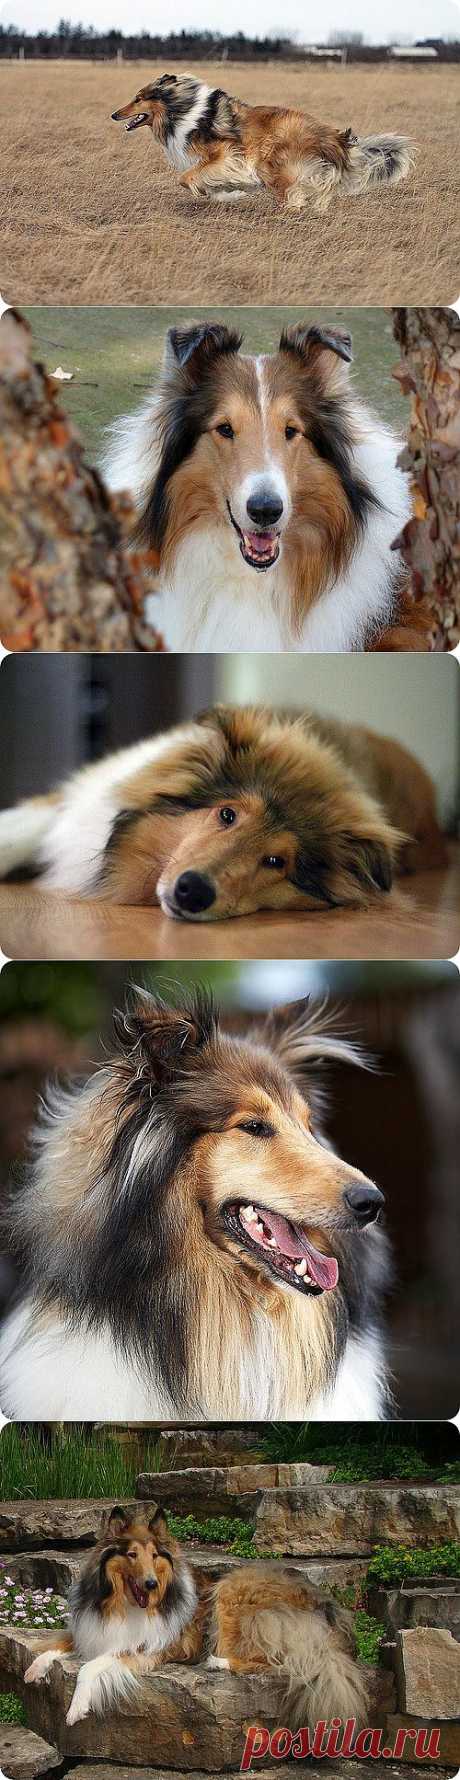 Колли (Шотландская овчарка), фотографии собак породы Колли